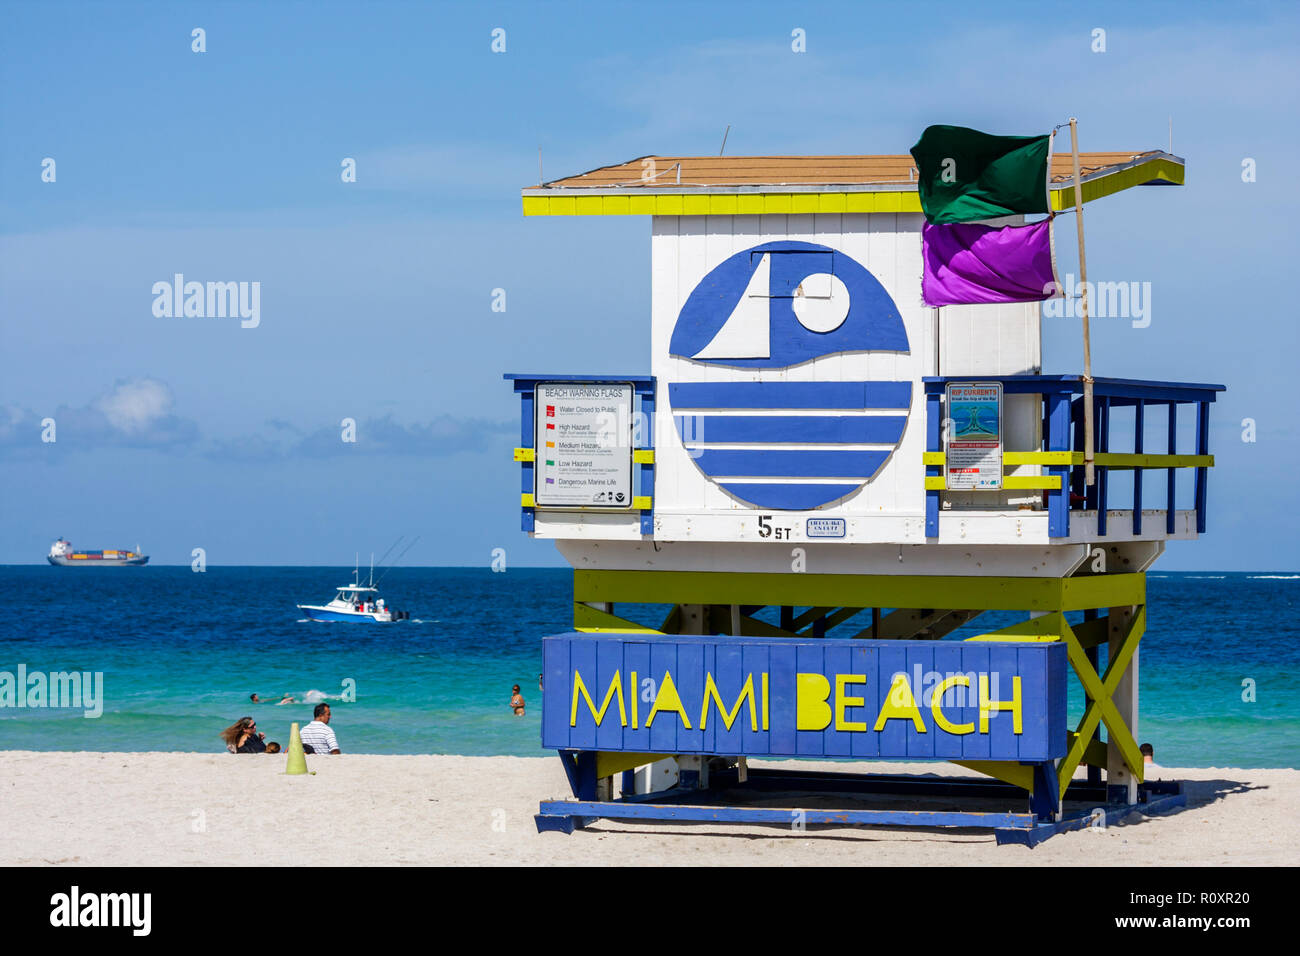 Miami Beach Florida, Atlantik, Wasser, öffentlicher Strand, Rettungsschwimmer Stand, Station, Ufer, Sicherheit, Warnflagge, lila, grün, gefährliche Unterwasserwelt, FL090607142 Stockfoto